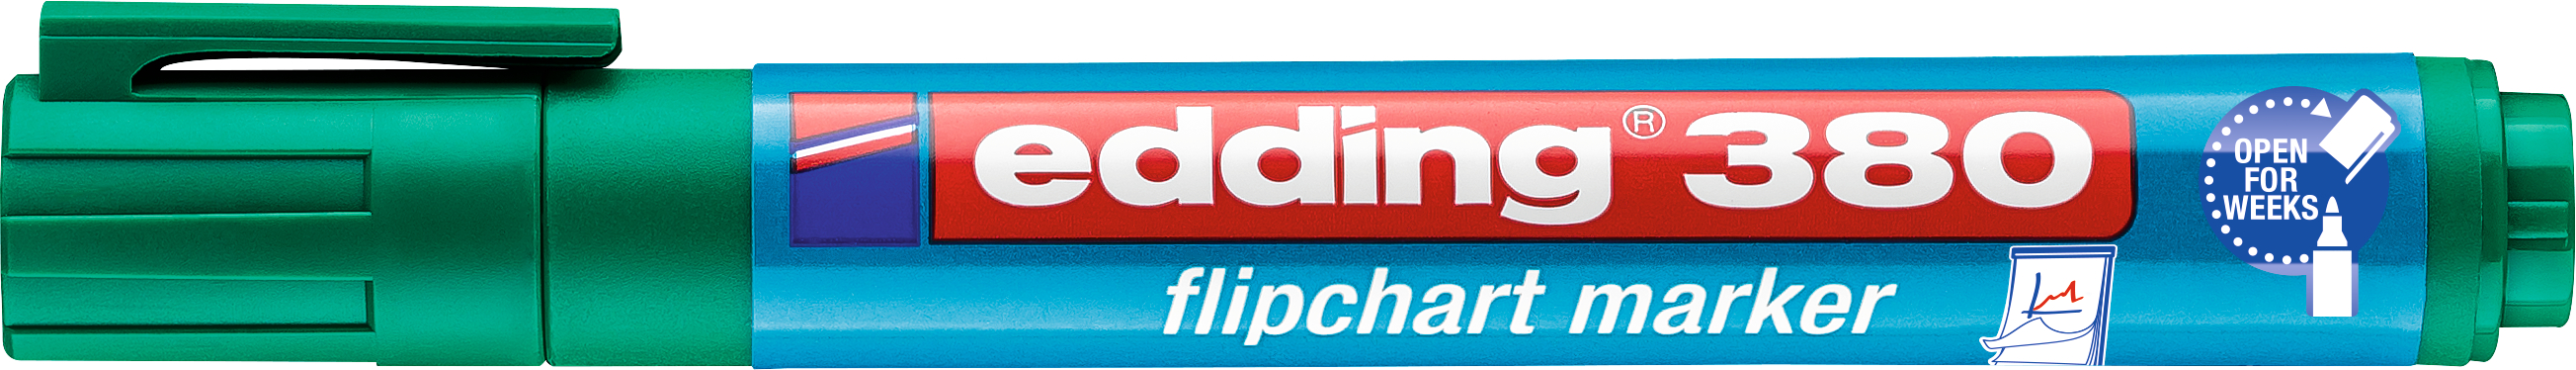 EDDING Flipchart Marker 380 1,5-3mm 380-4 vert